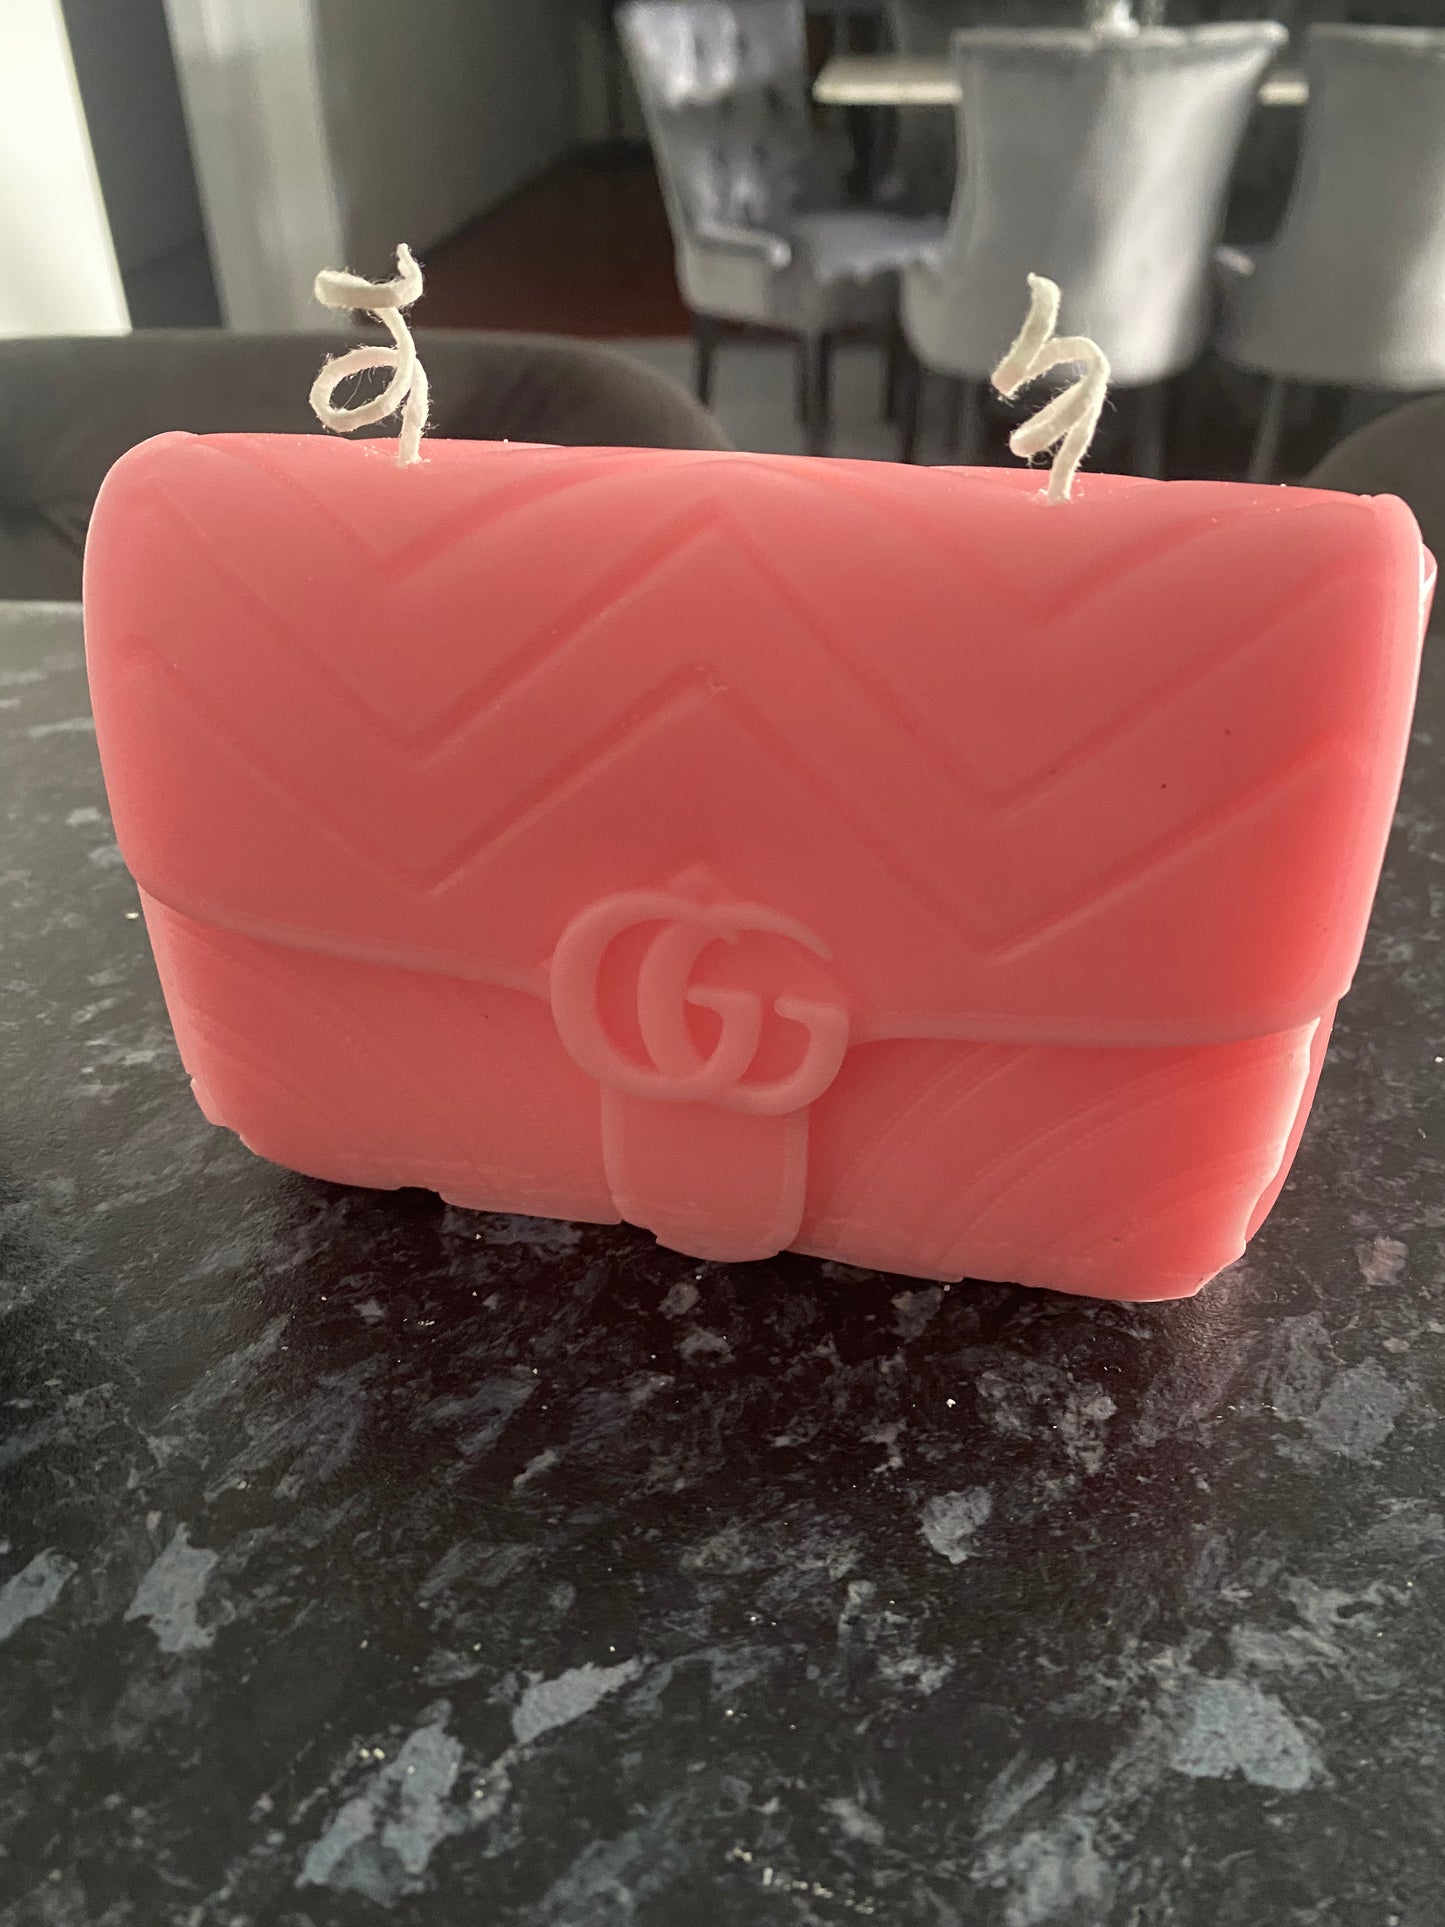 LV Candle handbag Pink